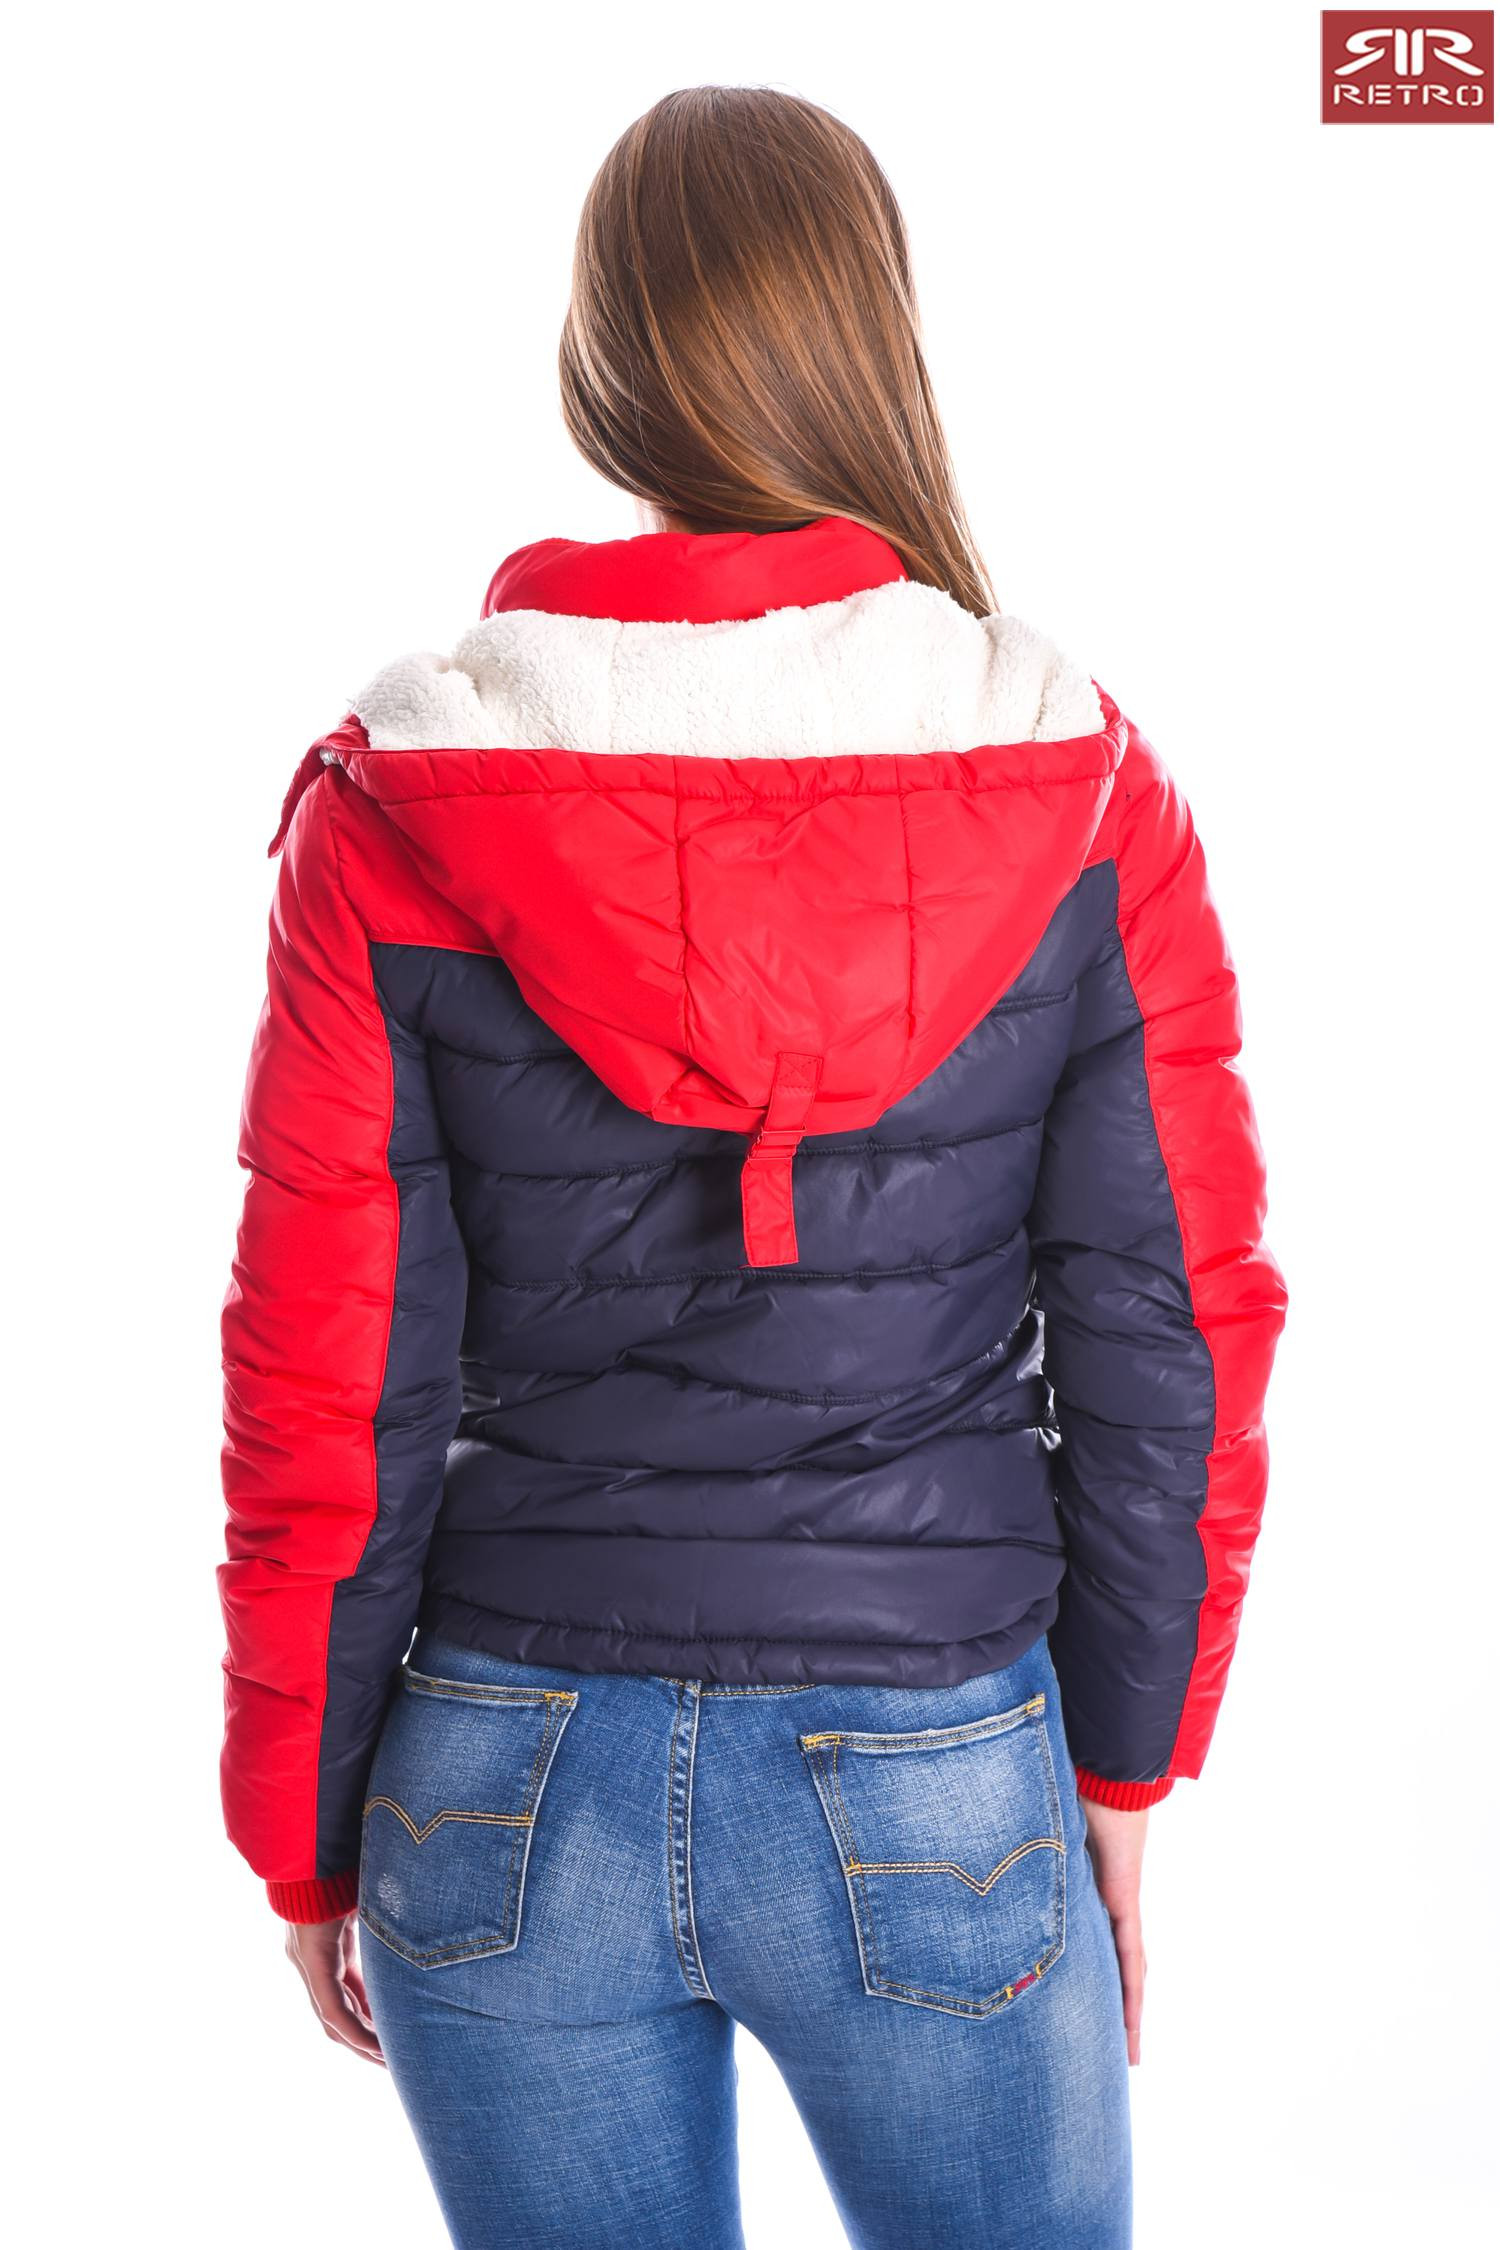 متجر عاطفي أخضر  RetroJeans női kabát (Valentina 15) 2633 | Retro női kabátok - RetroJeans  Női termékek